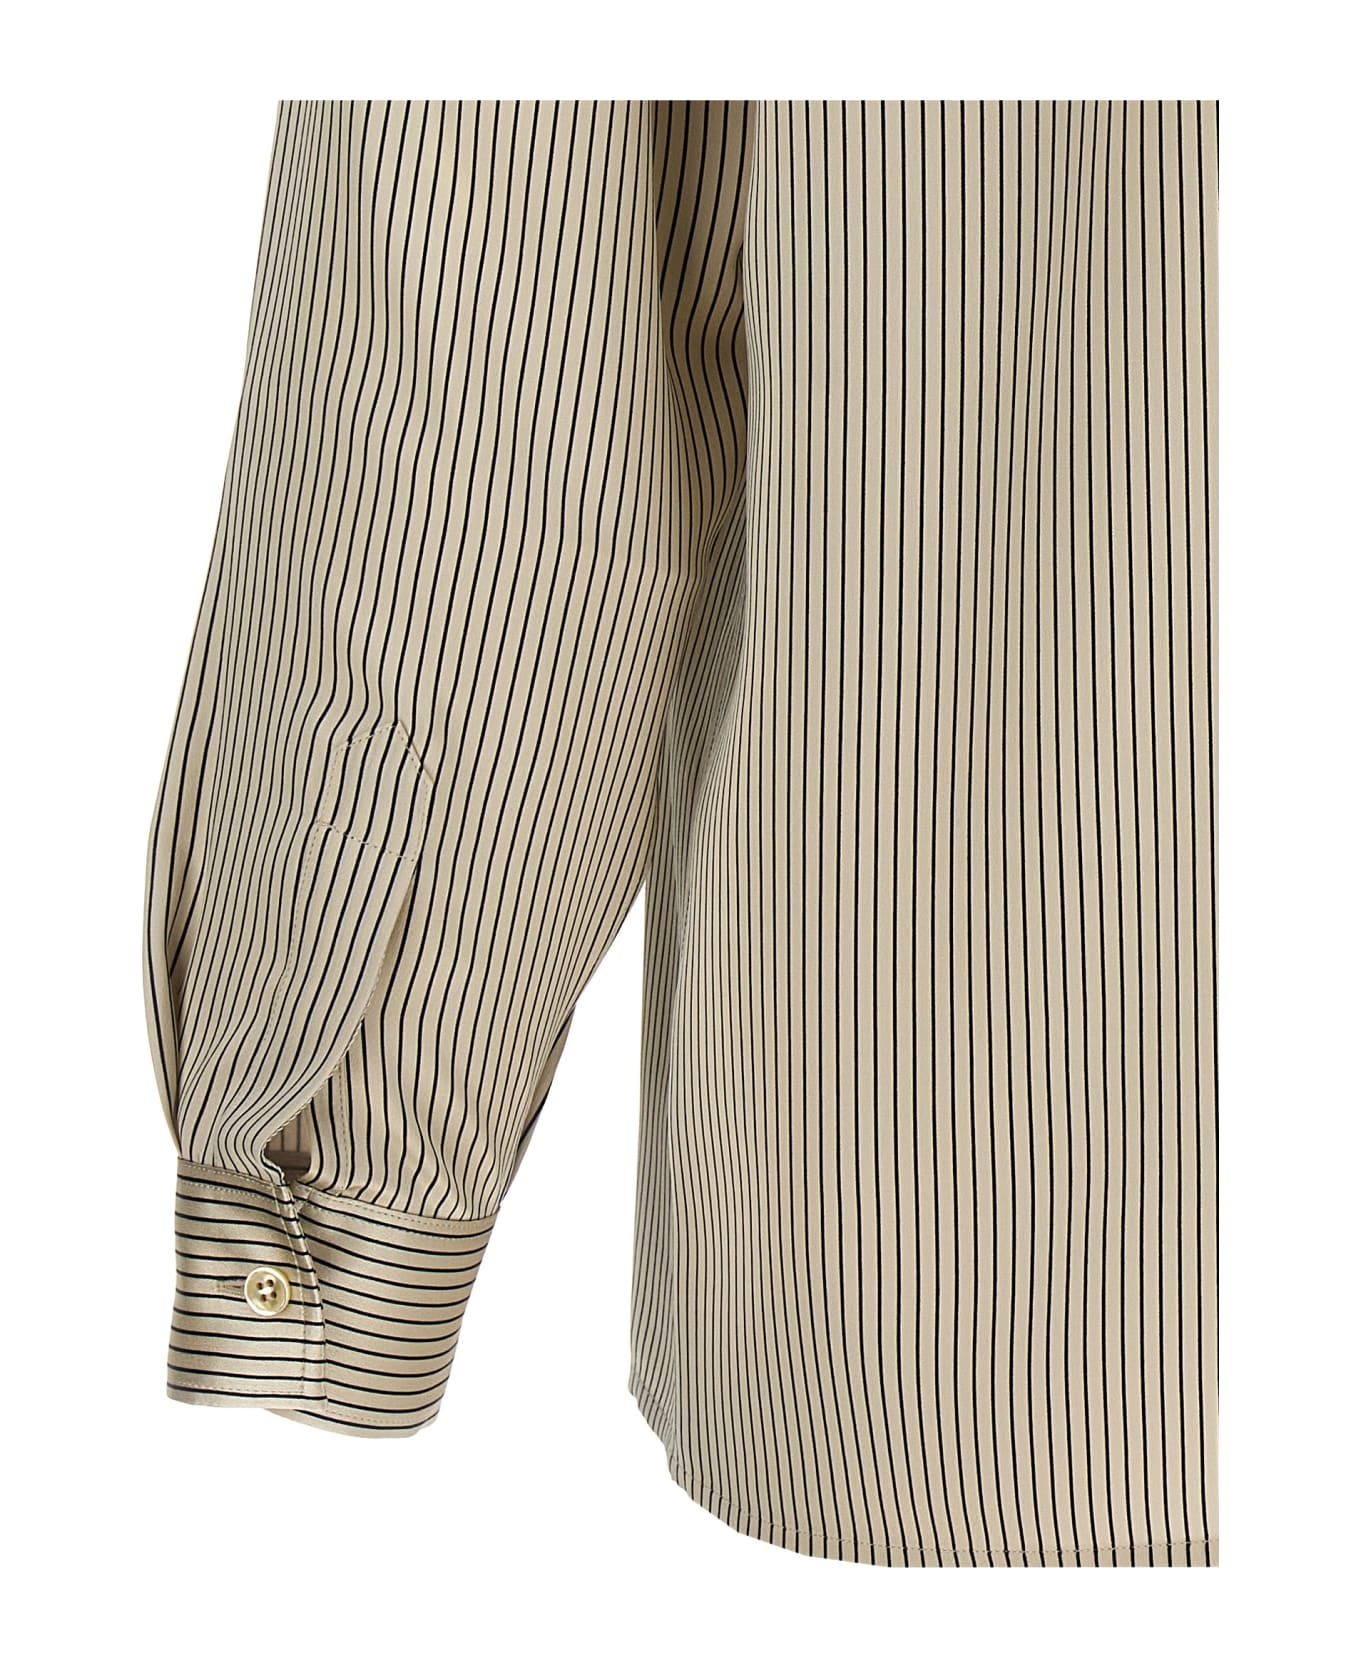 Saint Laurent 'satin' Striped Shirt - White/Black シャツ